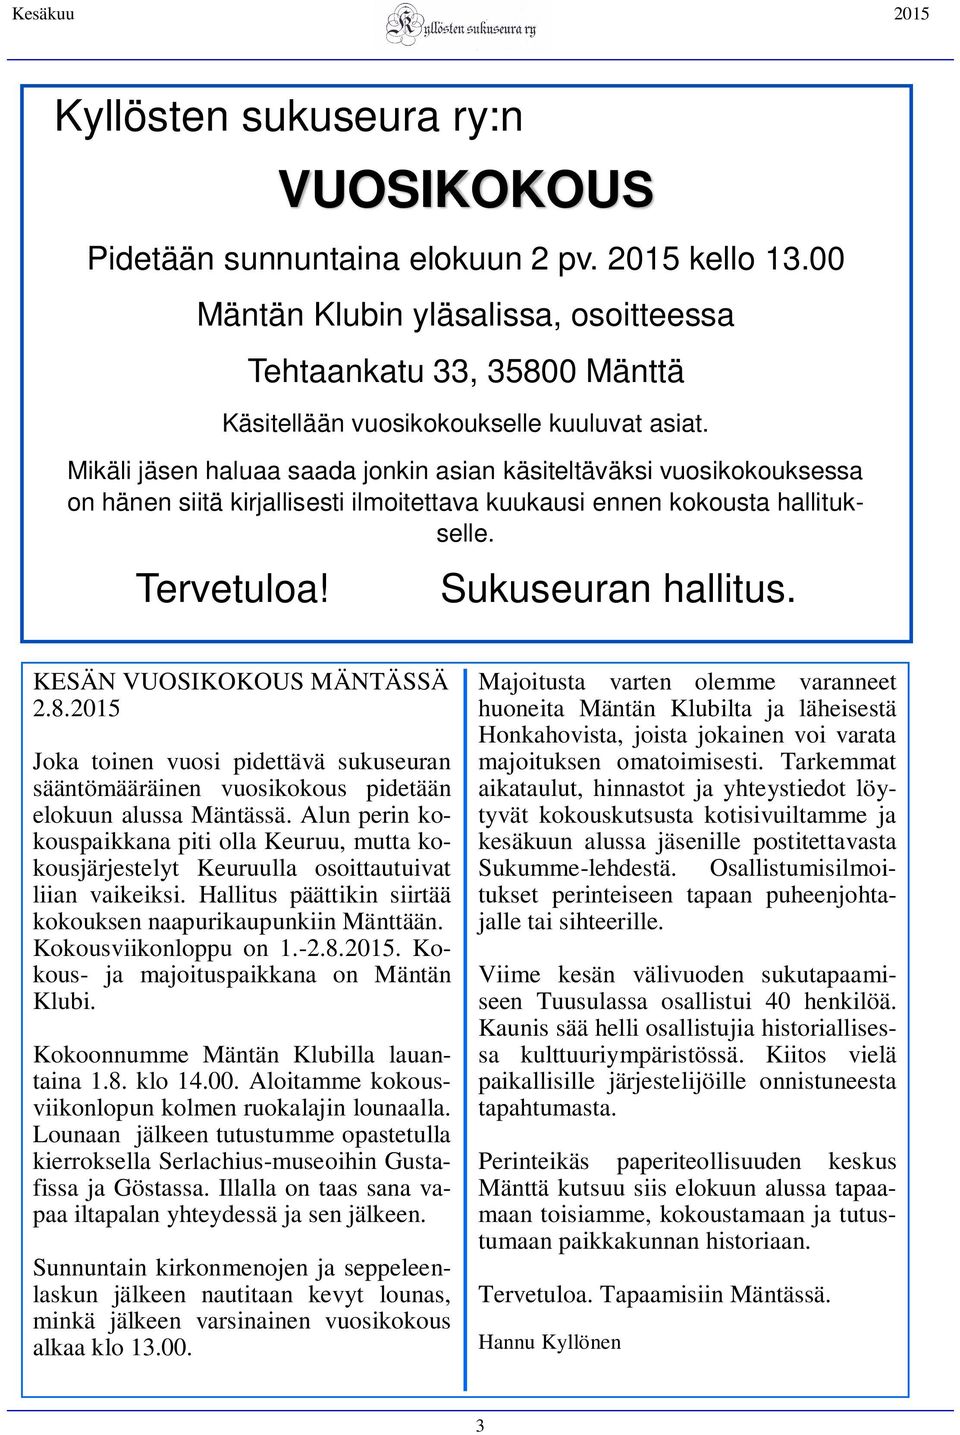 KESÄN VUOSIKOKOUS MÄNTÄSSÄ 2.8.2015 Joka toinen vuosi pidettävä sukuseuran sääntömääräinen vuosikokous pidetään elokuun alussa Mäntässä.